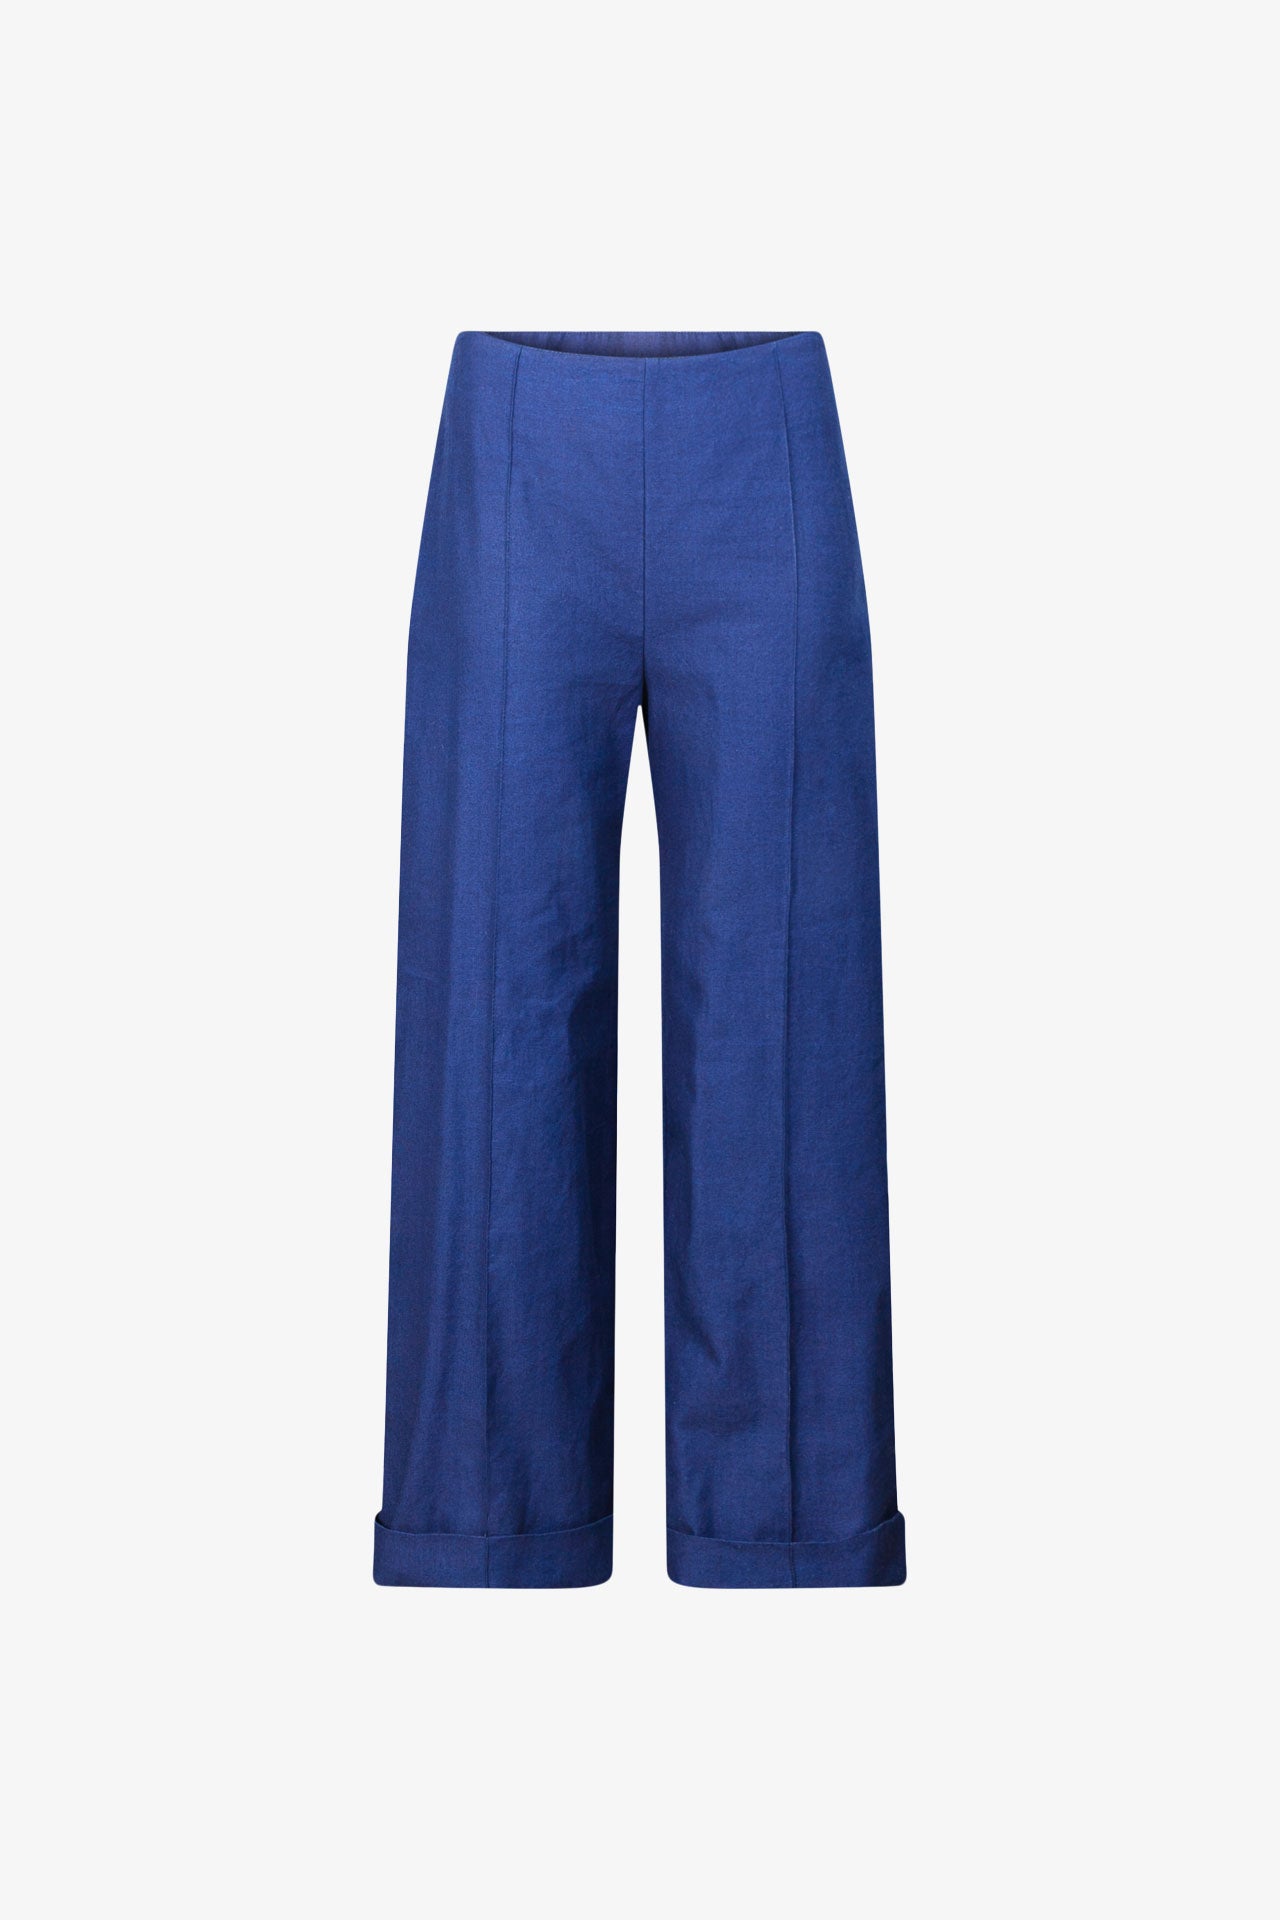 Prototype - Pantalon Laure Bleu De Chine